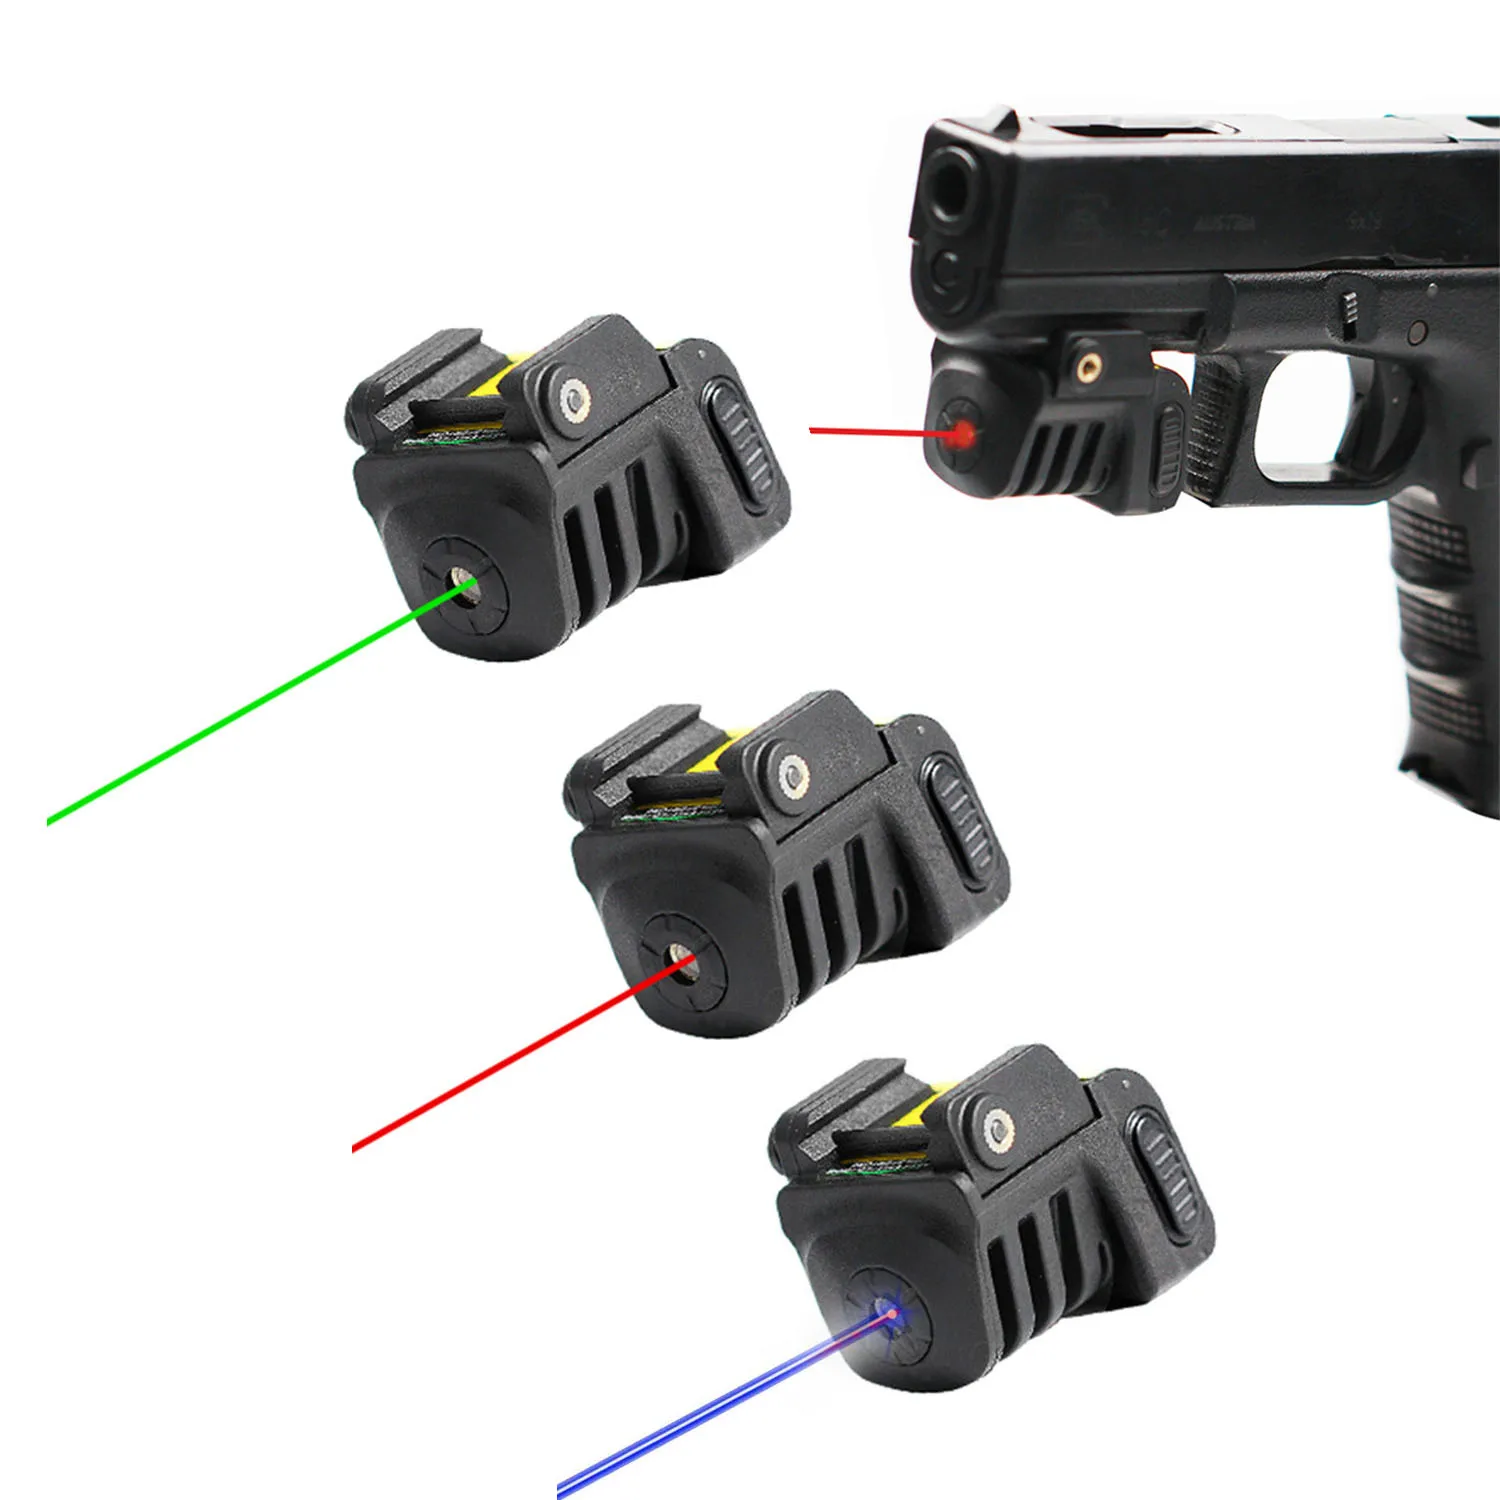 

Лазерная указка для оружия Taurus G2 G2C G3 G3C Glock 17 19 Sig Sauer P226, перезаряжаемая через USB, зеленая, красная, синяя точка